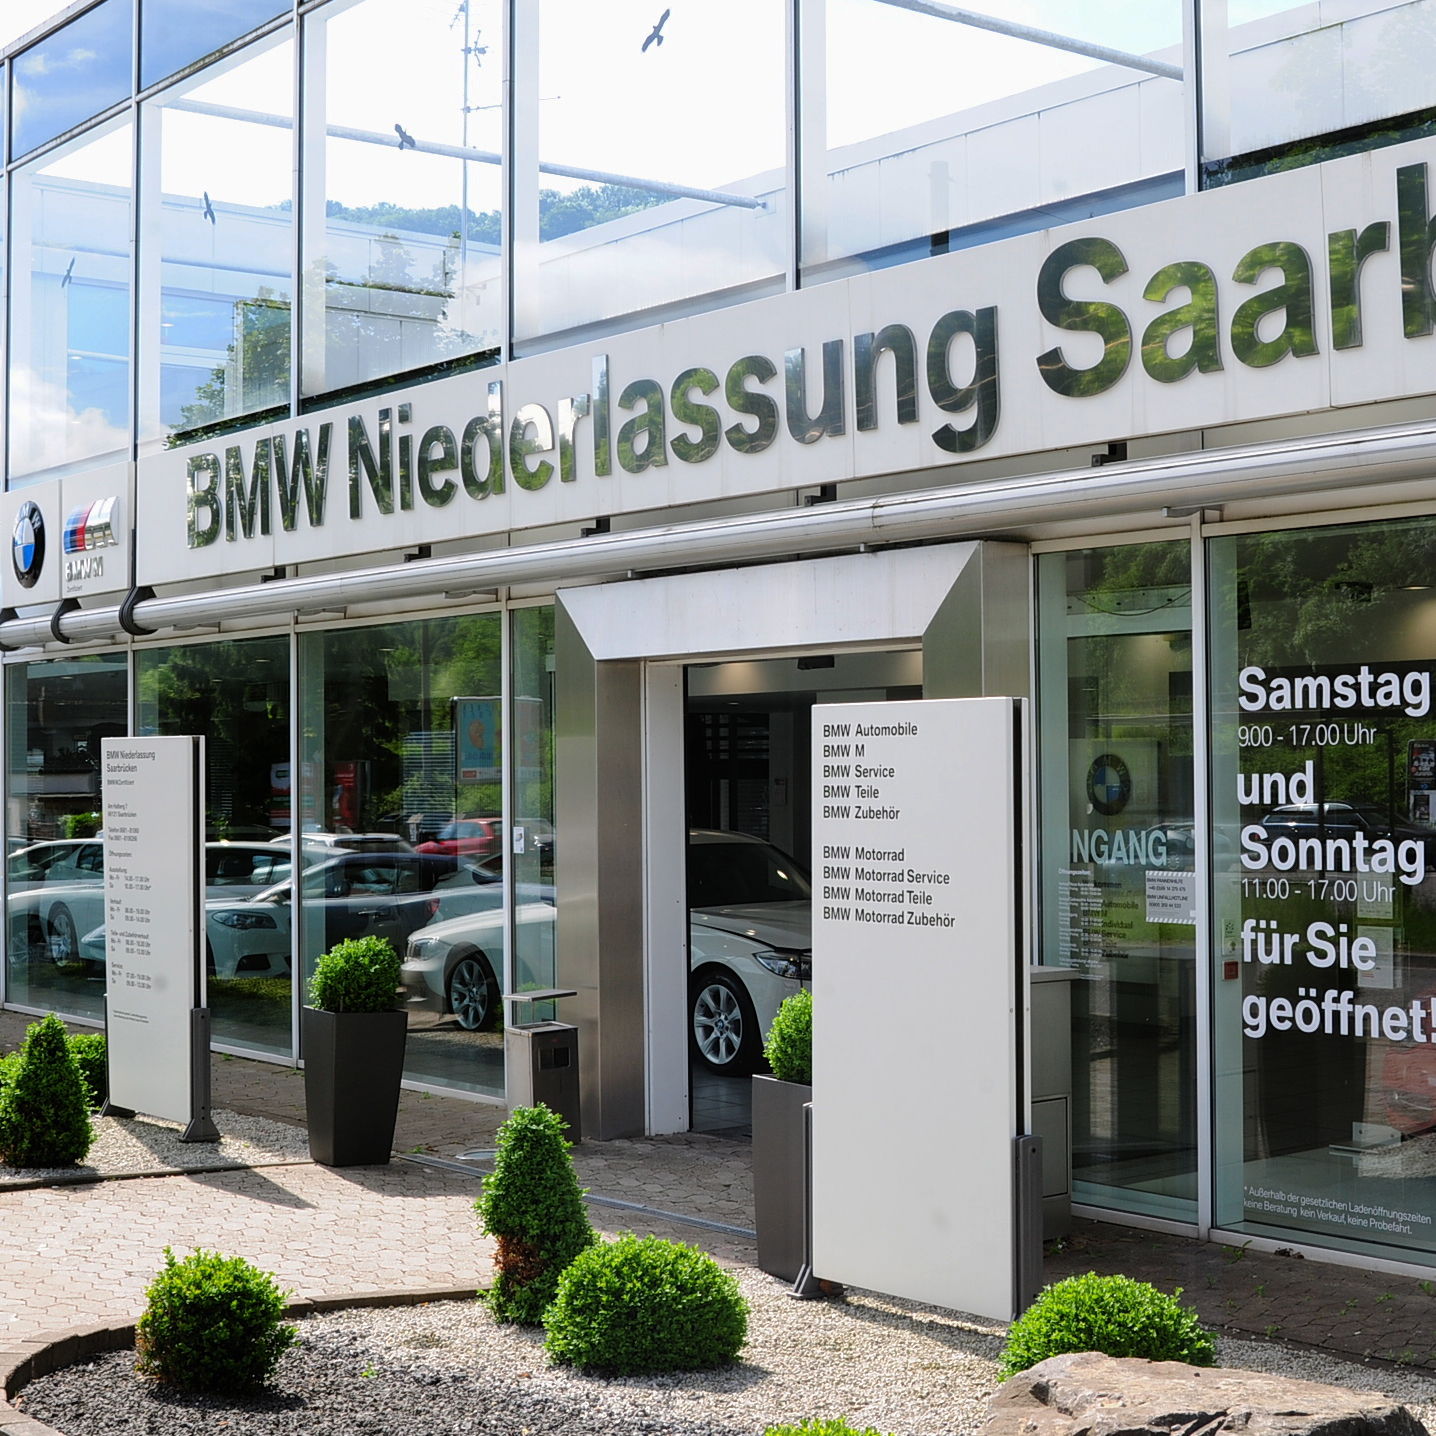 Das Bild zeigt die BMW Niederlassung Saarbrücken.